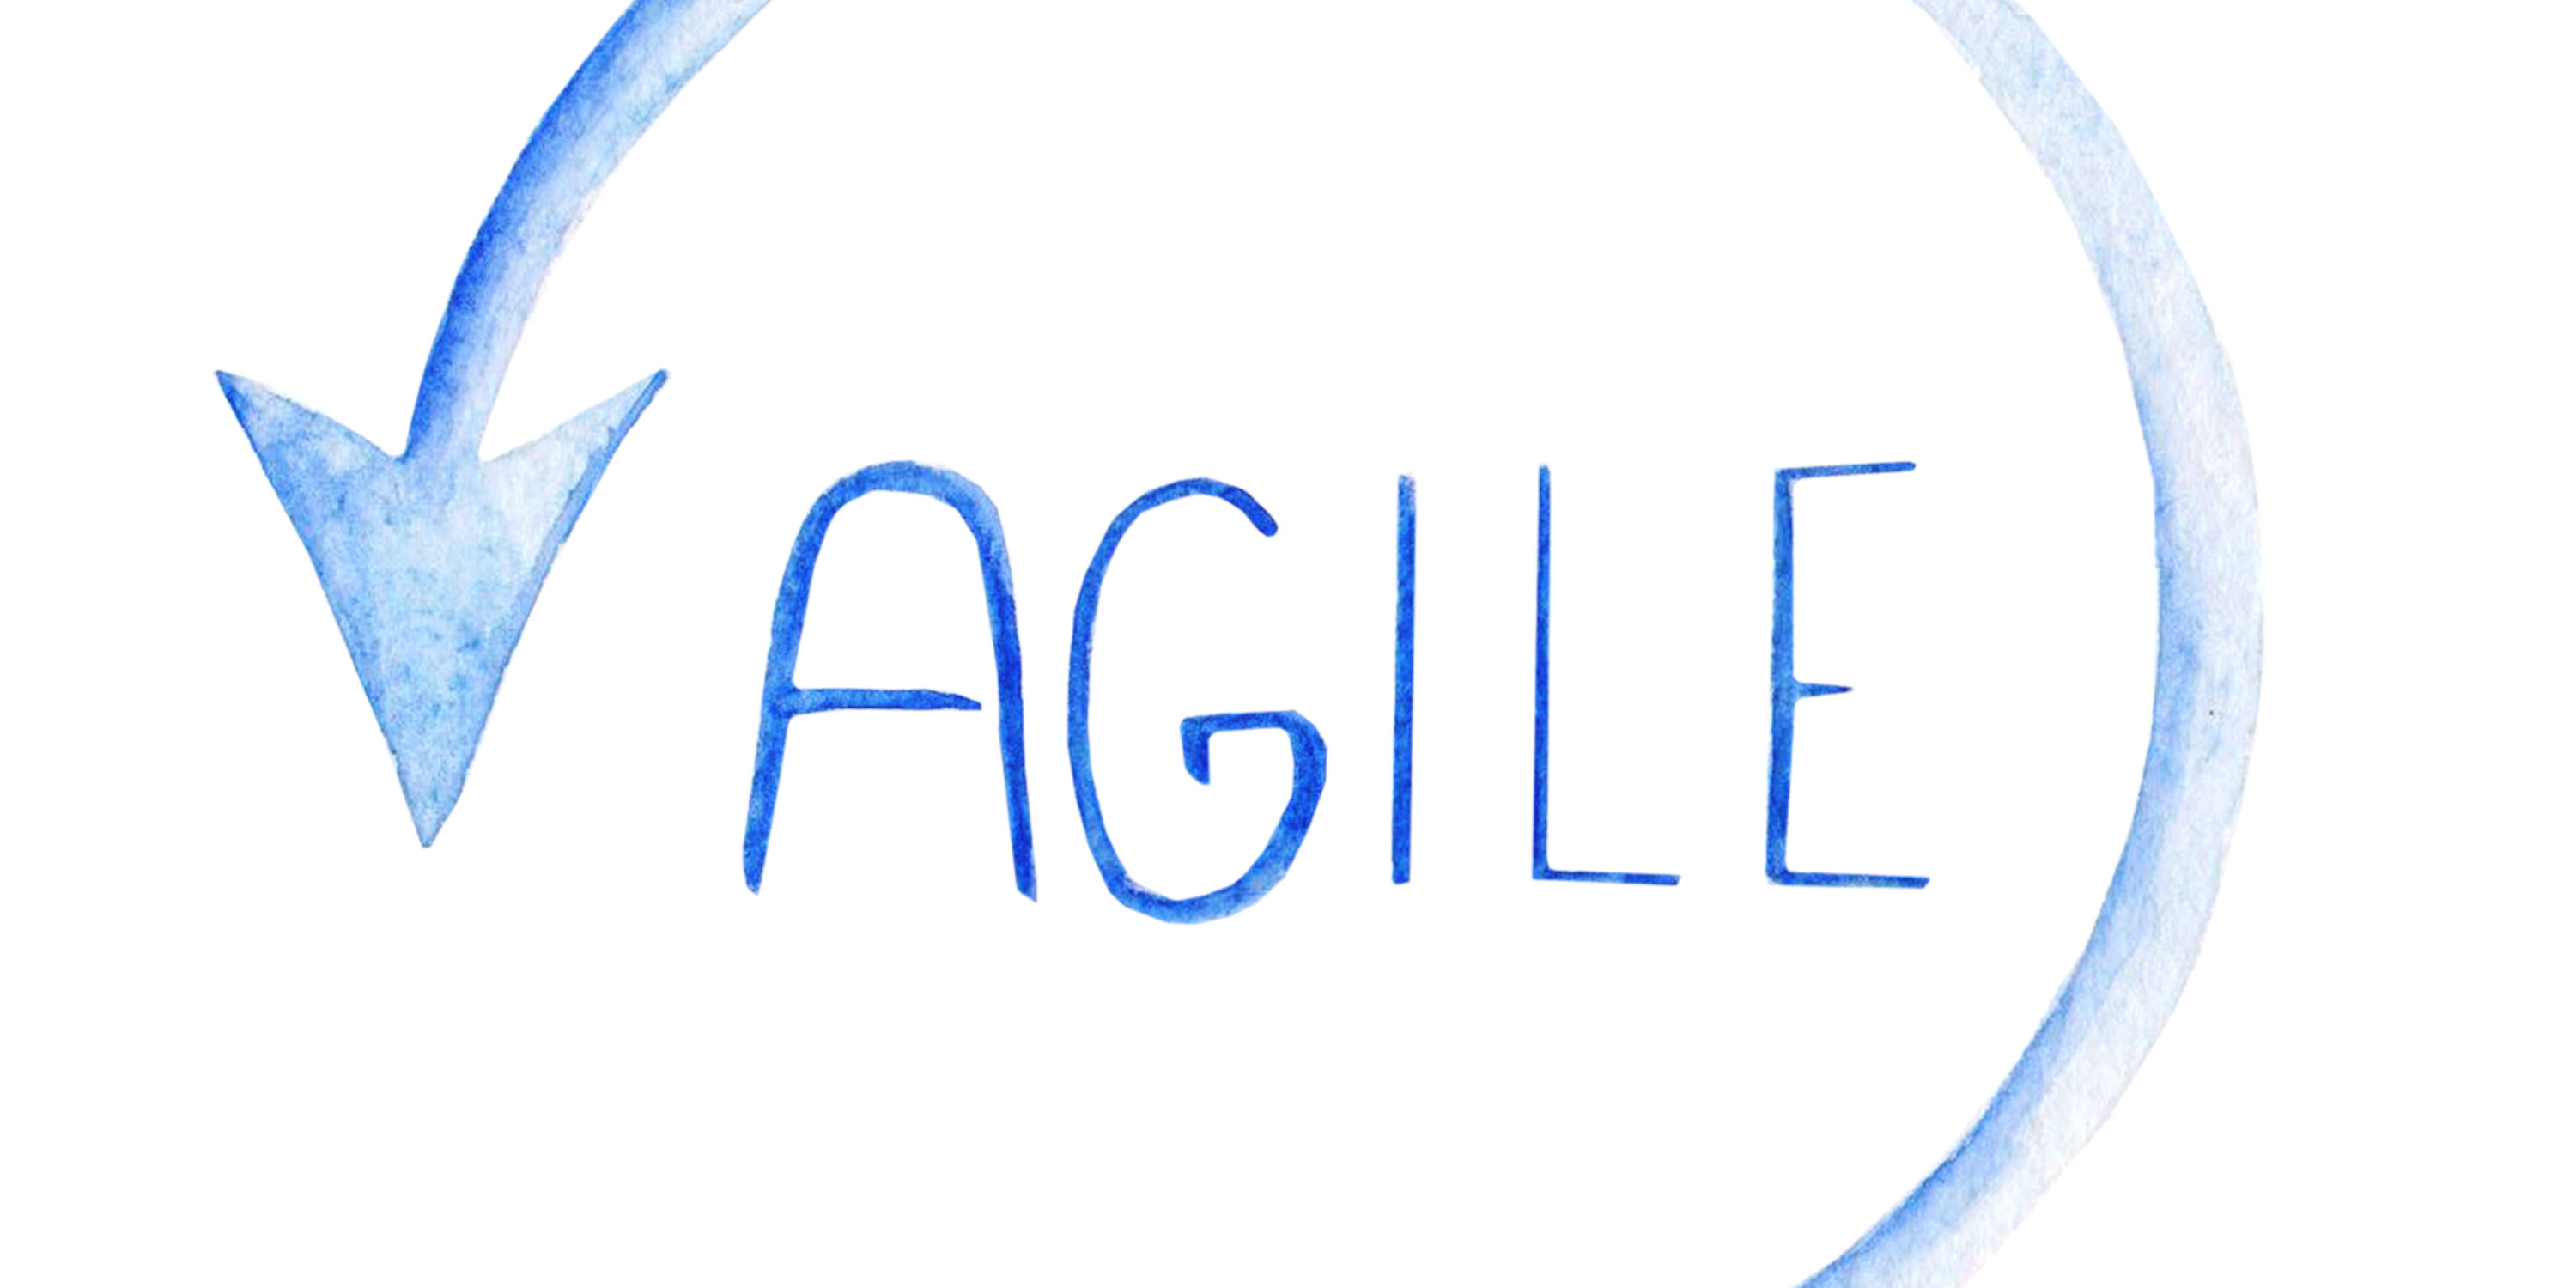 Créer et développer une entreprise en mode « Agile»